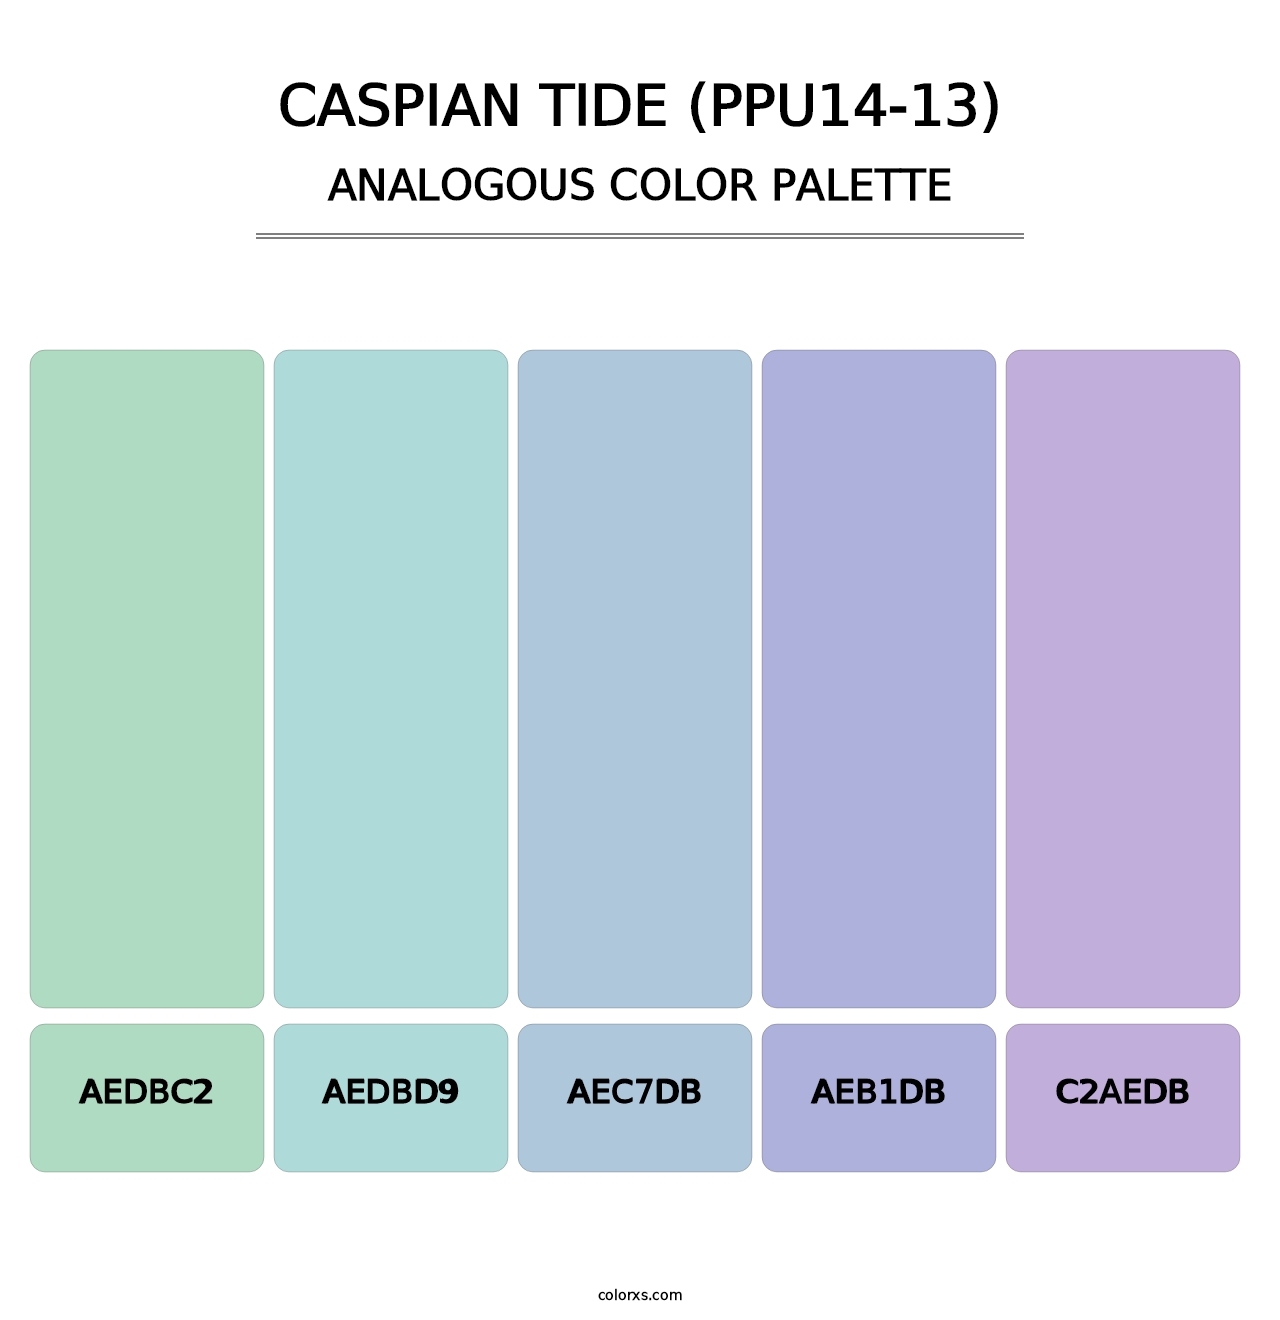 Caspian Tide (PPU14-13) - Analogous Color Palette